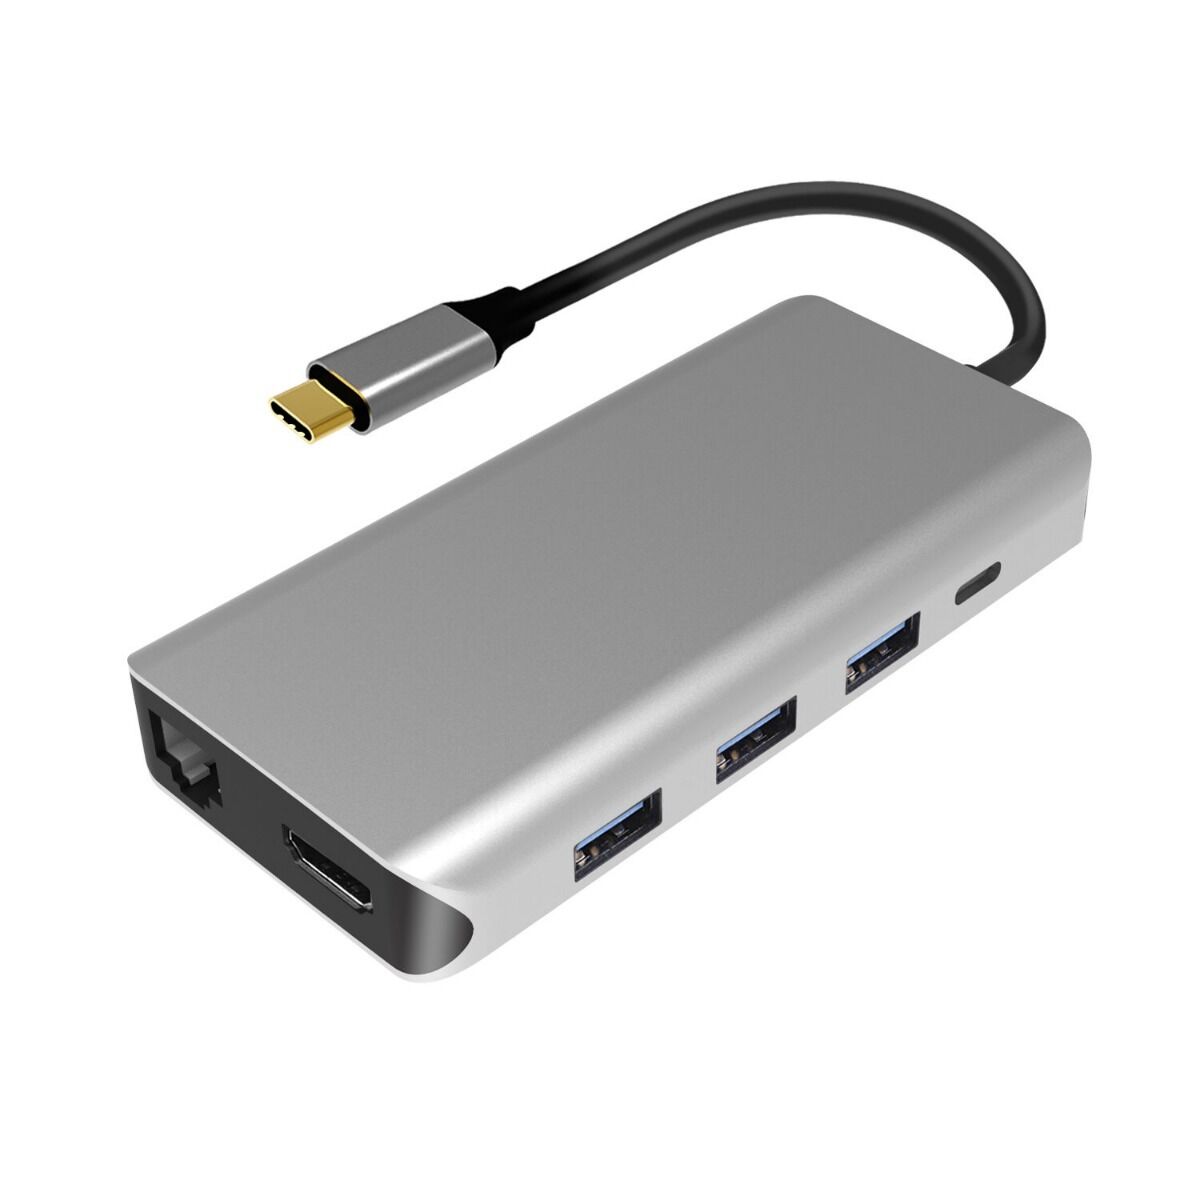 Adaptor multiport PNI MP09 USB-C la HDMI, 4 x USB 3.0, SD/TF, RJ45, USB-C PD, 9 iesiri